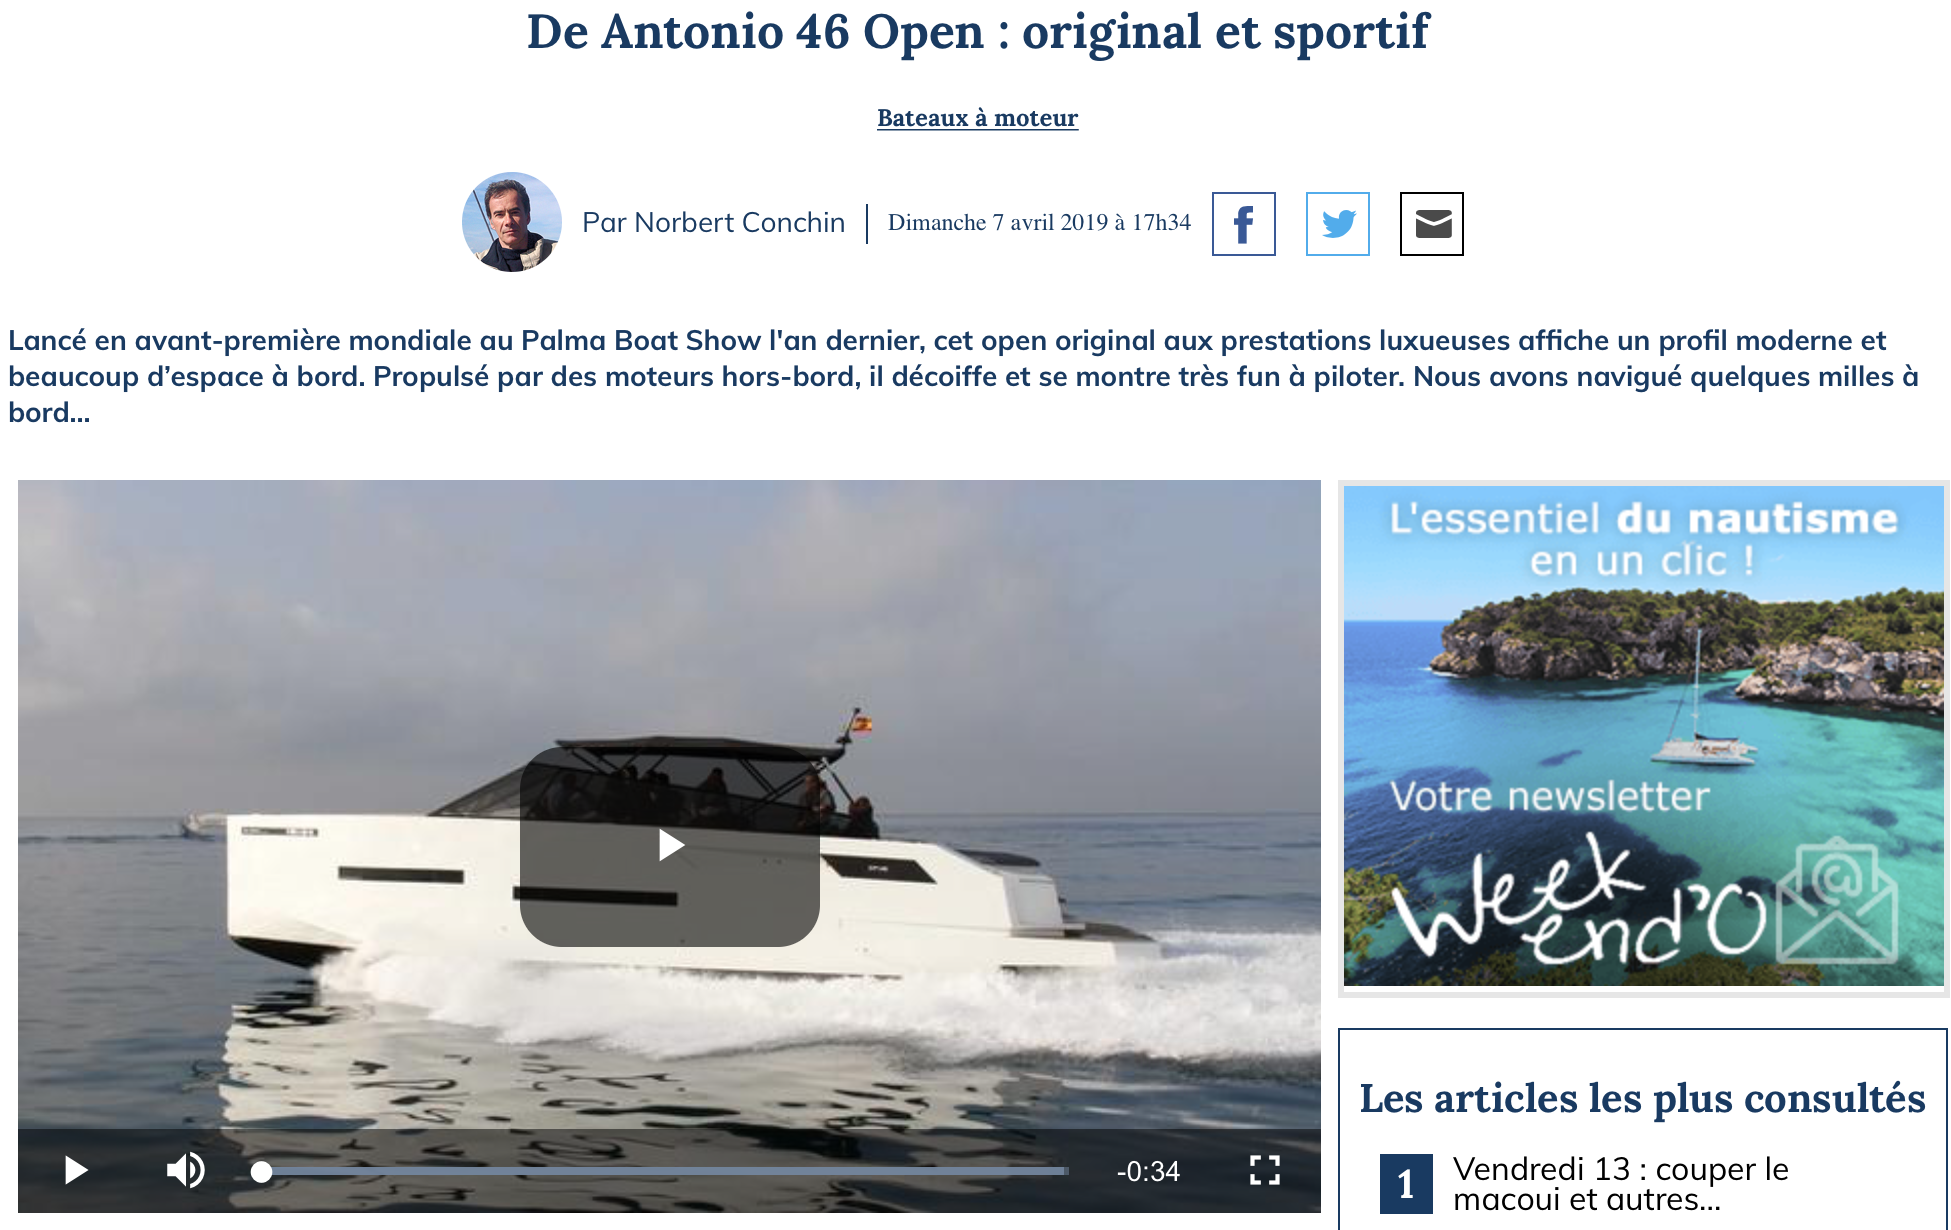 https://figaronautisme.meteoconsult.fr/actus-nautisme-bateaux/2019-04-07/47205-de-antonio-46-open-original-et-sportif